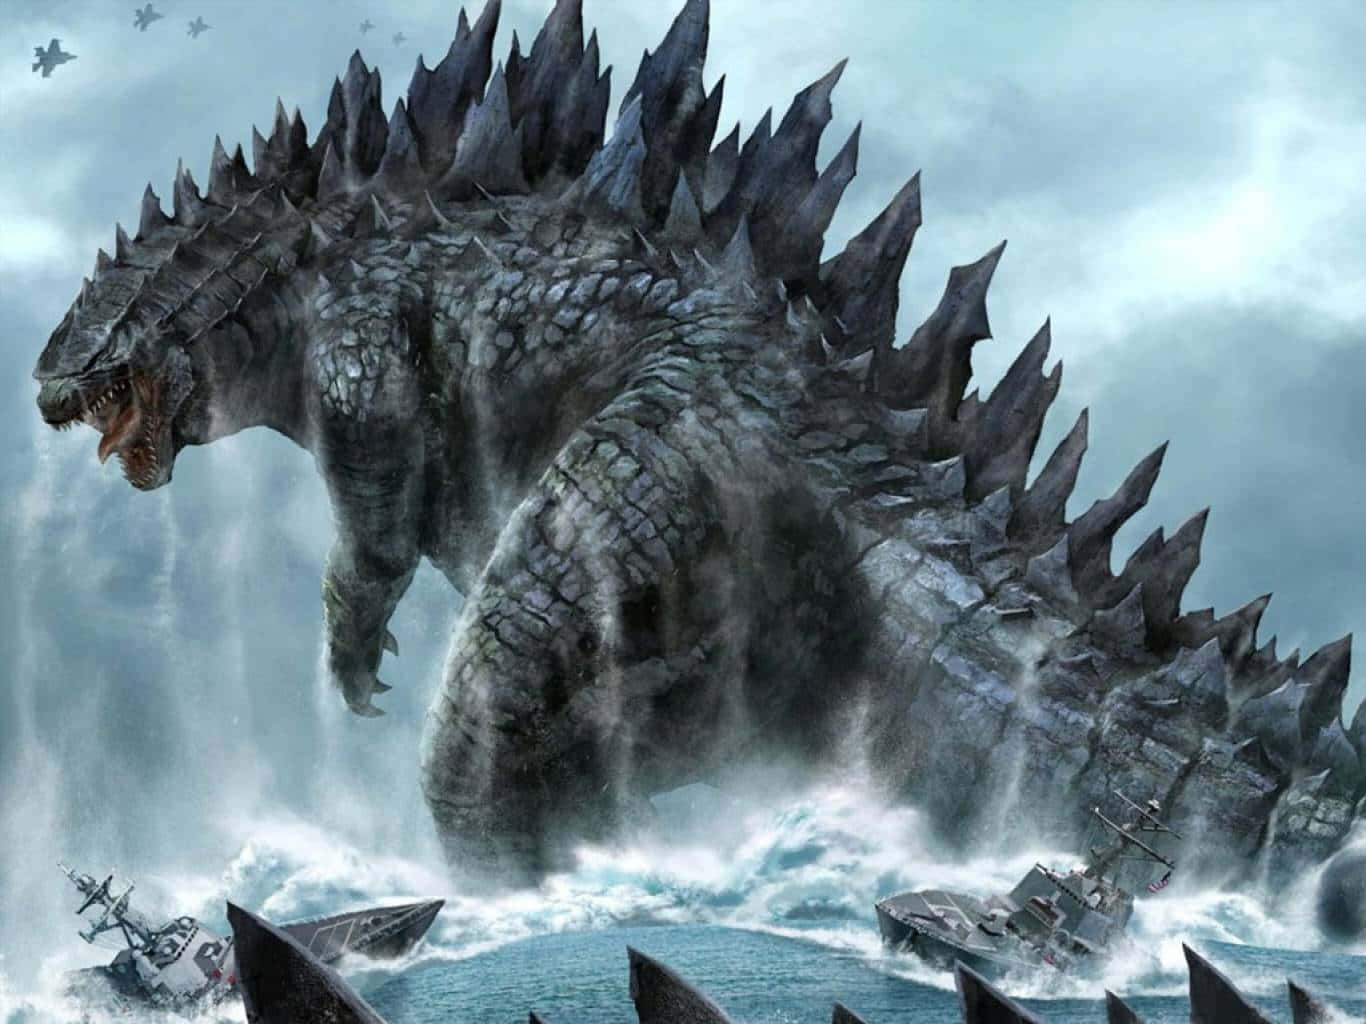 Affrontala Distruzione: La Minaccia Di Godzilla